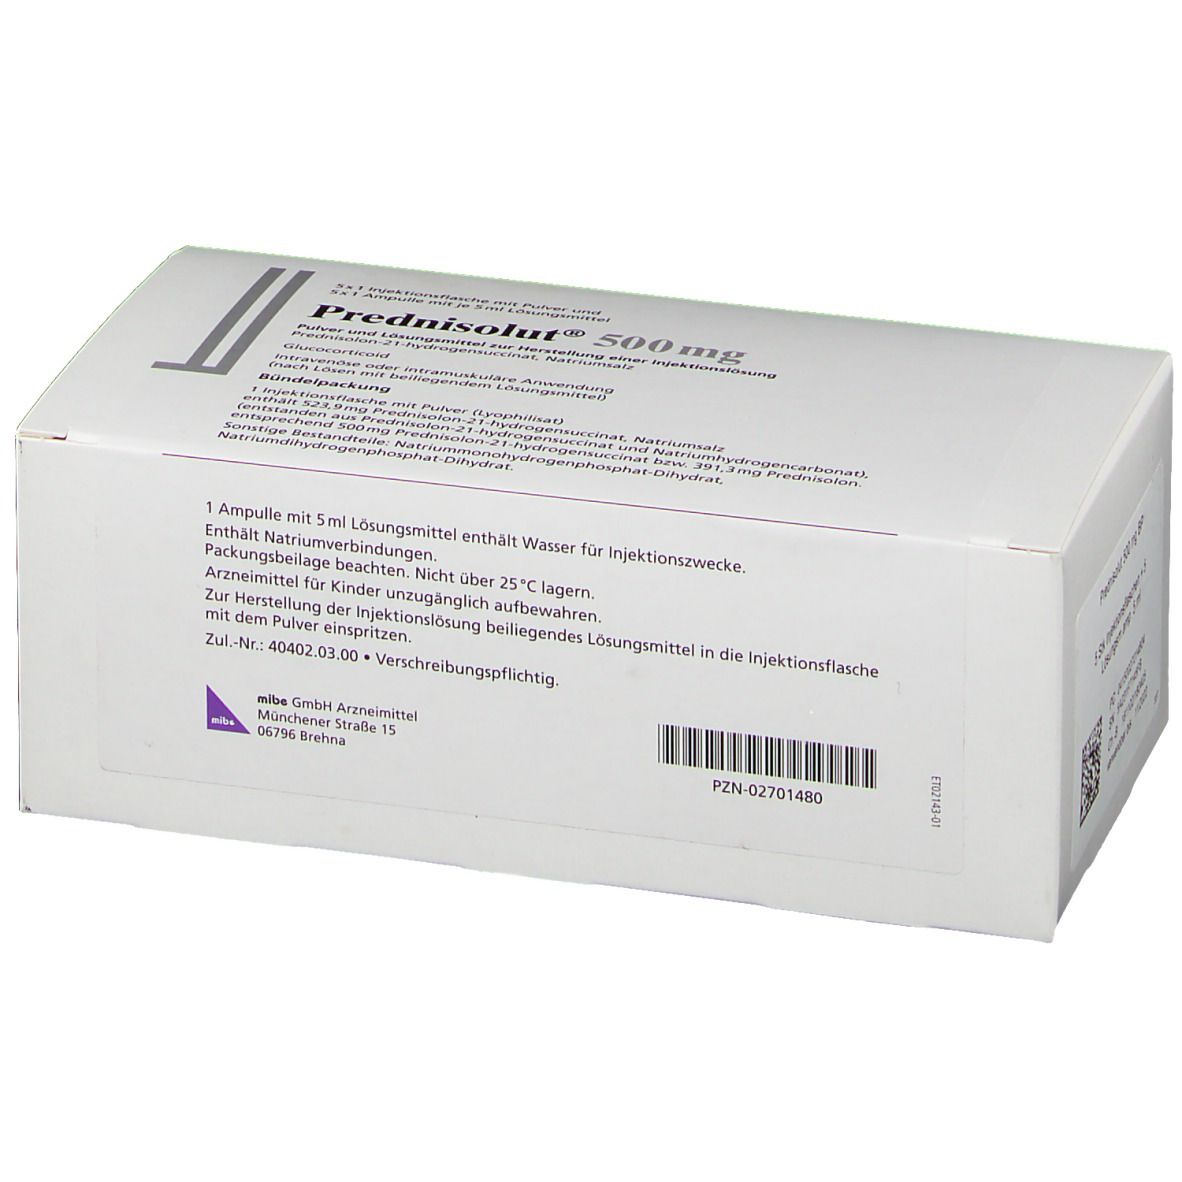 Prednisolut® 500 mg